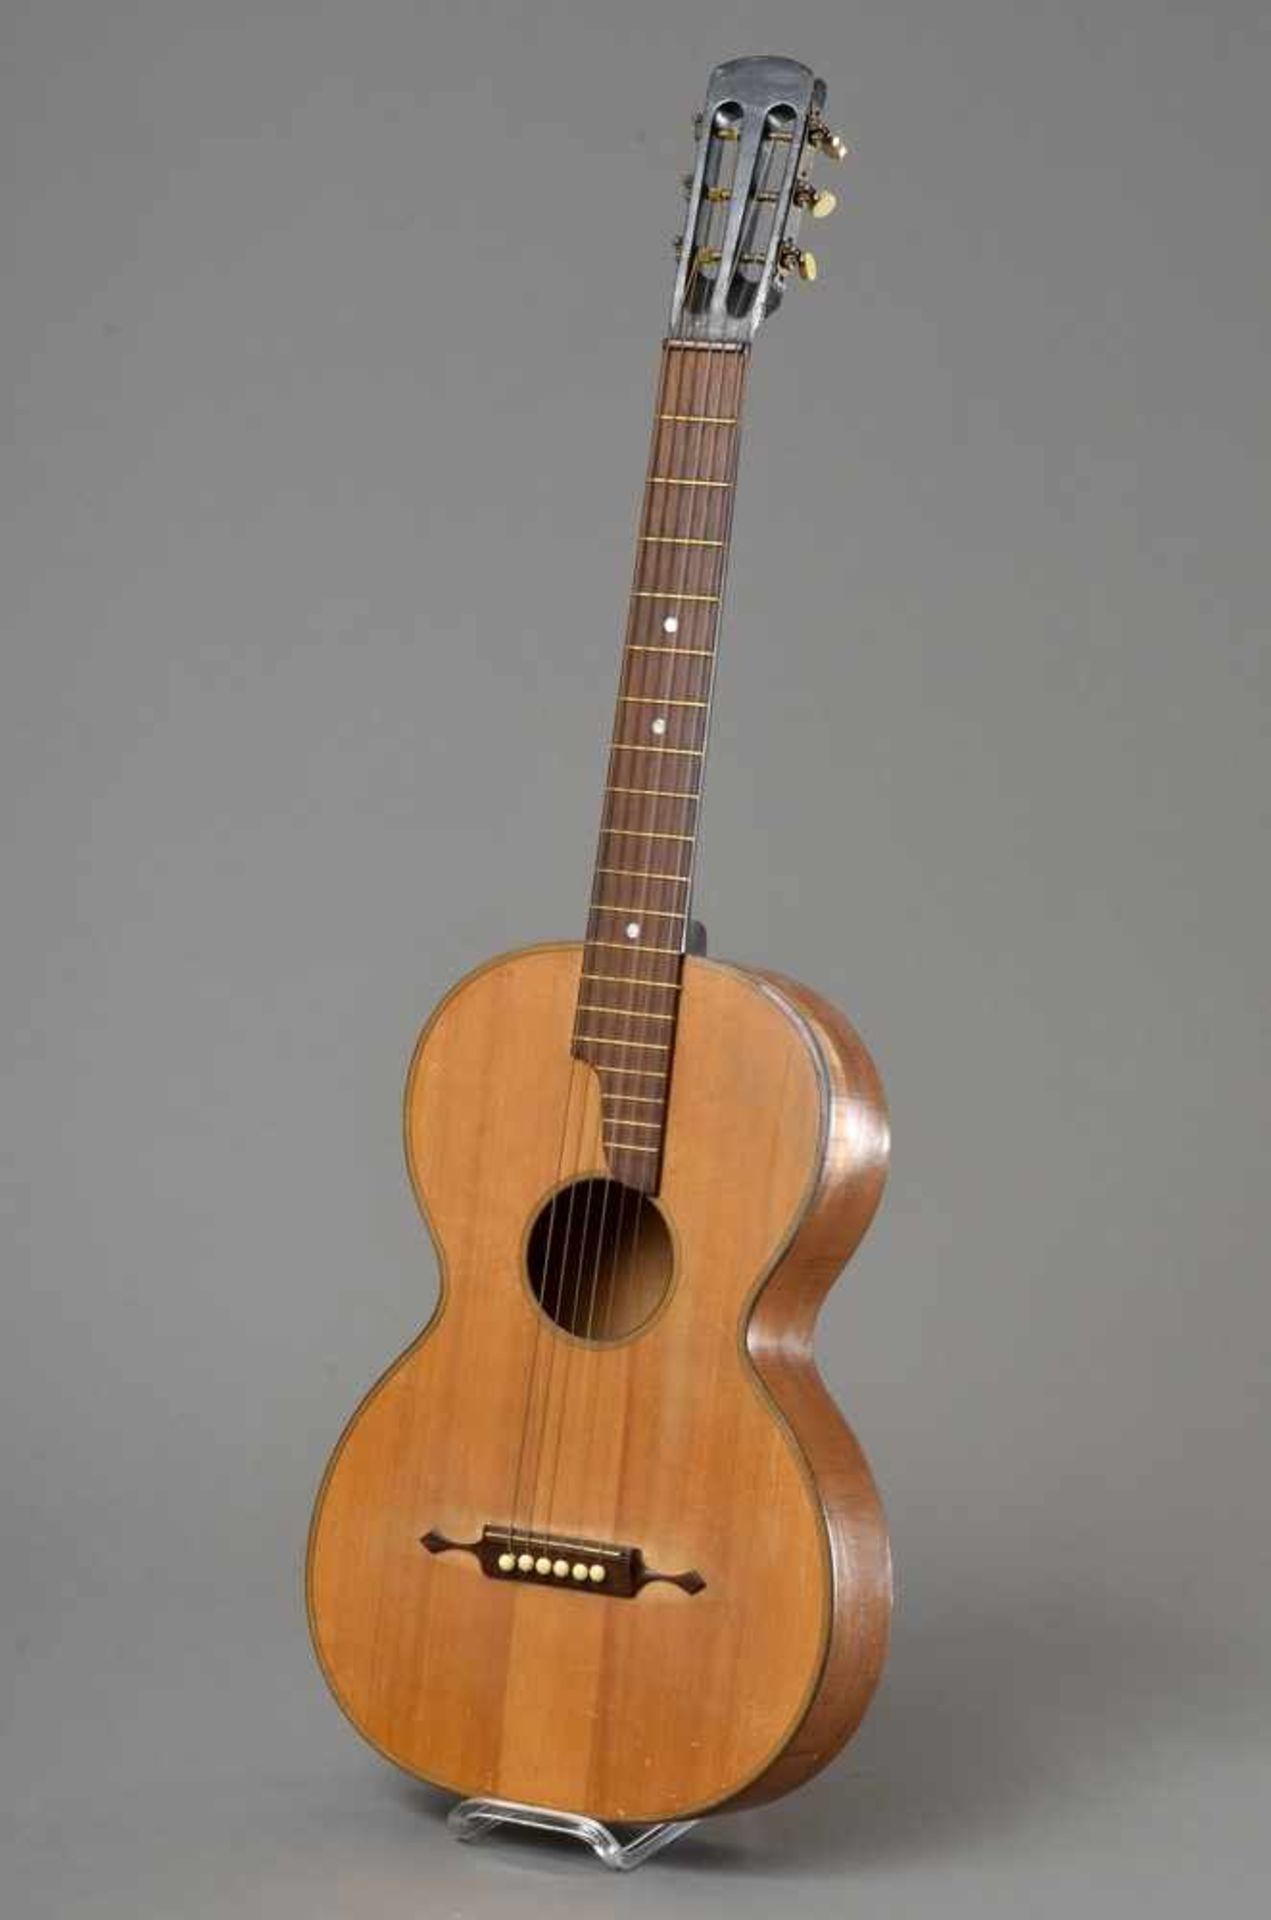 Historische Gitarre, Mensur 62cm, Gesamtlänge 93cm, Saitenhöhe 4-5mm, ca. 100 Jahre, spielbar